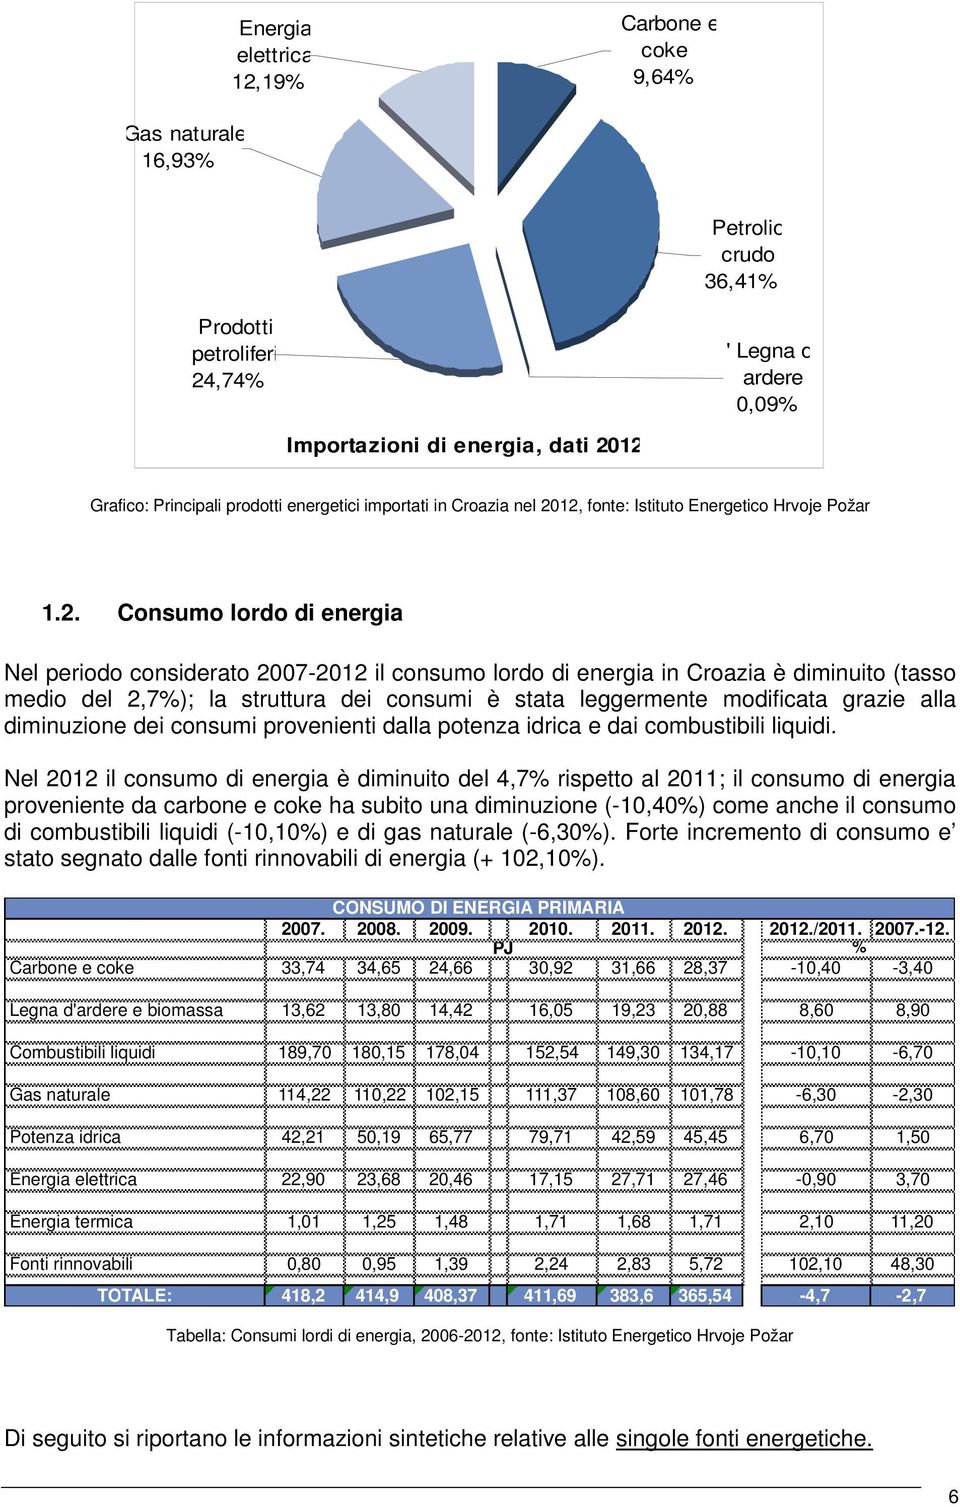 12, fonte: Istituto Energetico Hrvoje Požar 1.2. Consumo lordo di energia Nel periodo considerato 2007-2012 il consumo lordo di energia in Croazia è diminuito (tasso medio del 2,7%); la struttura dei